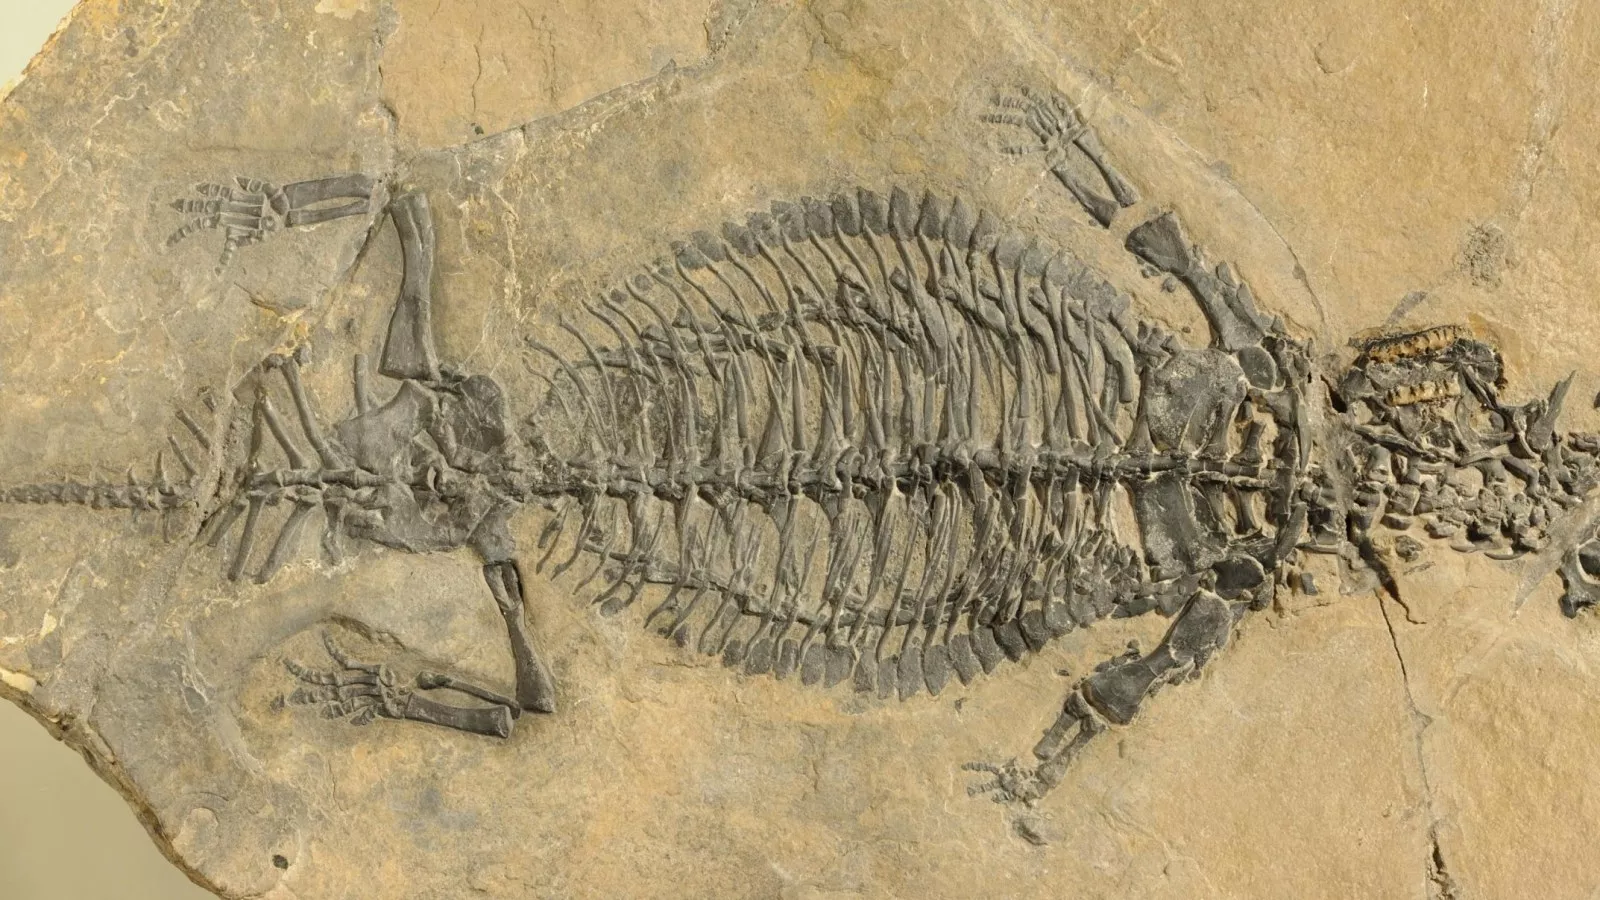 Окаменелости Триасового периода. Скелеты Триасового периода. Скелеты динозавров Триасового периода. Eusaurosphargis dalsassoi.